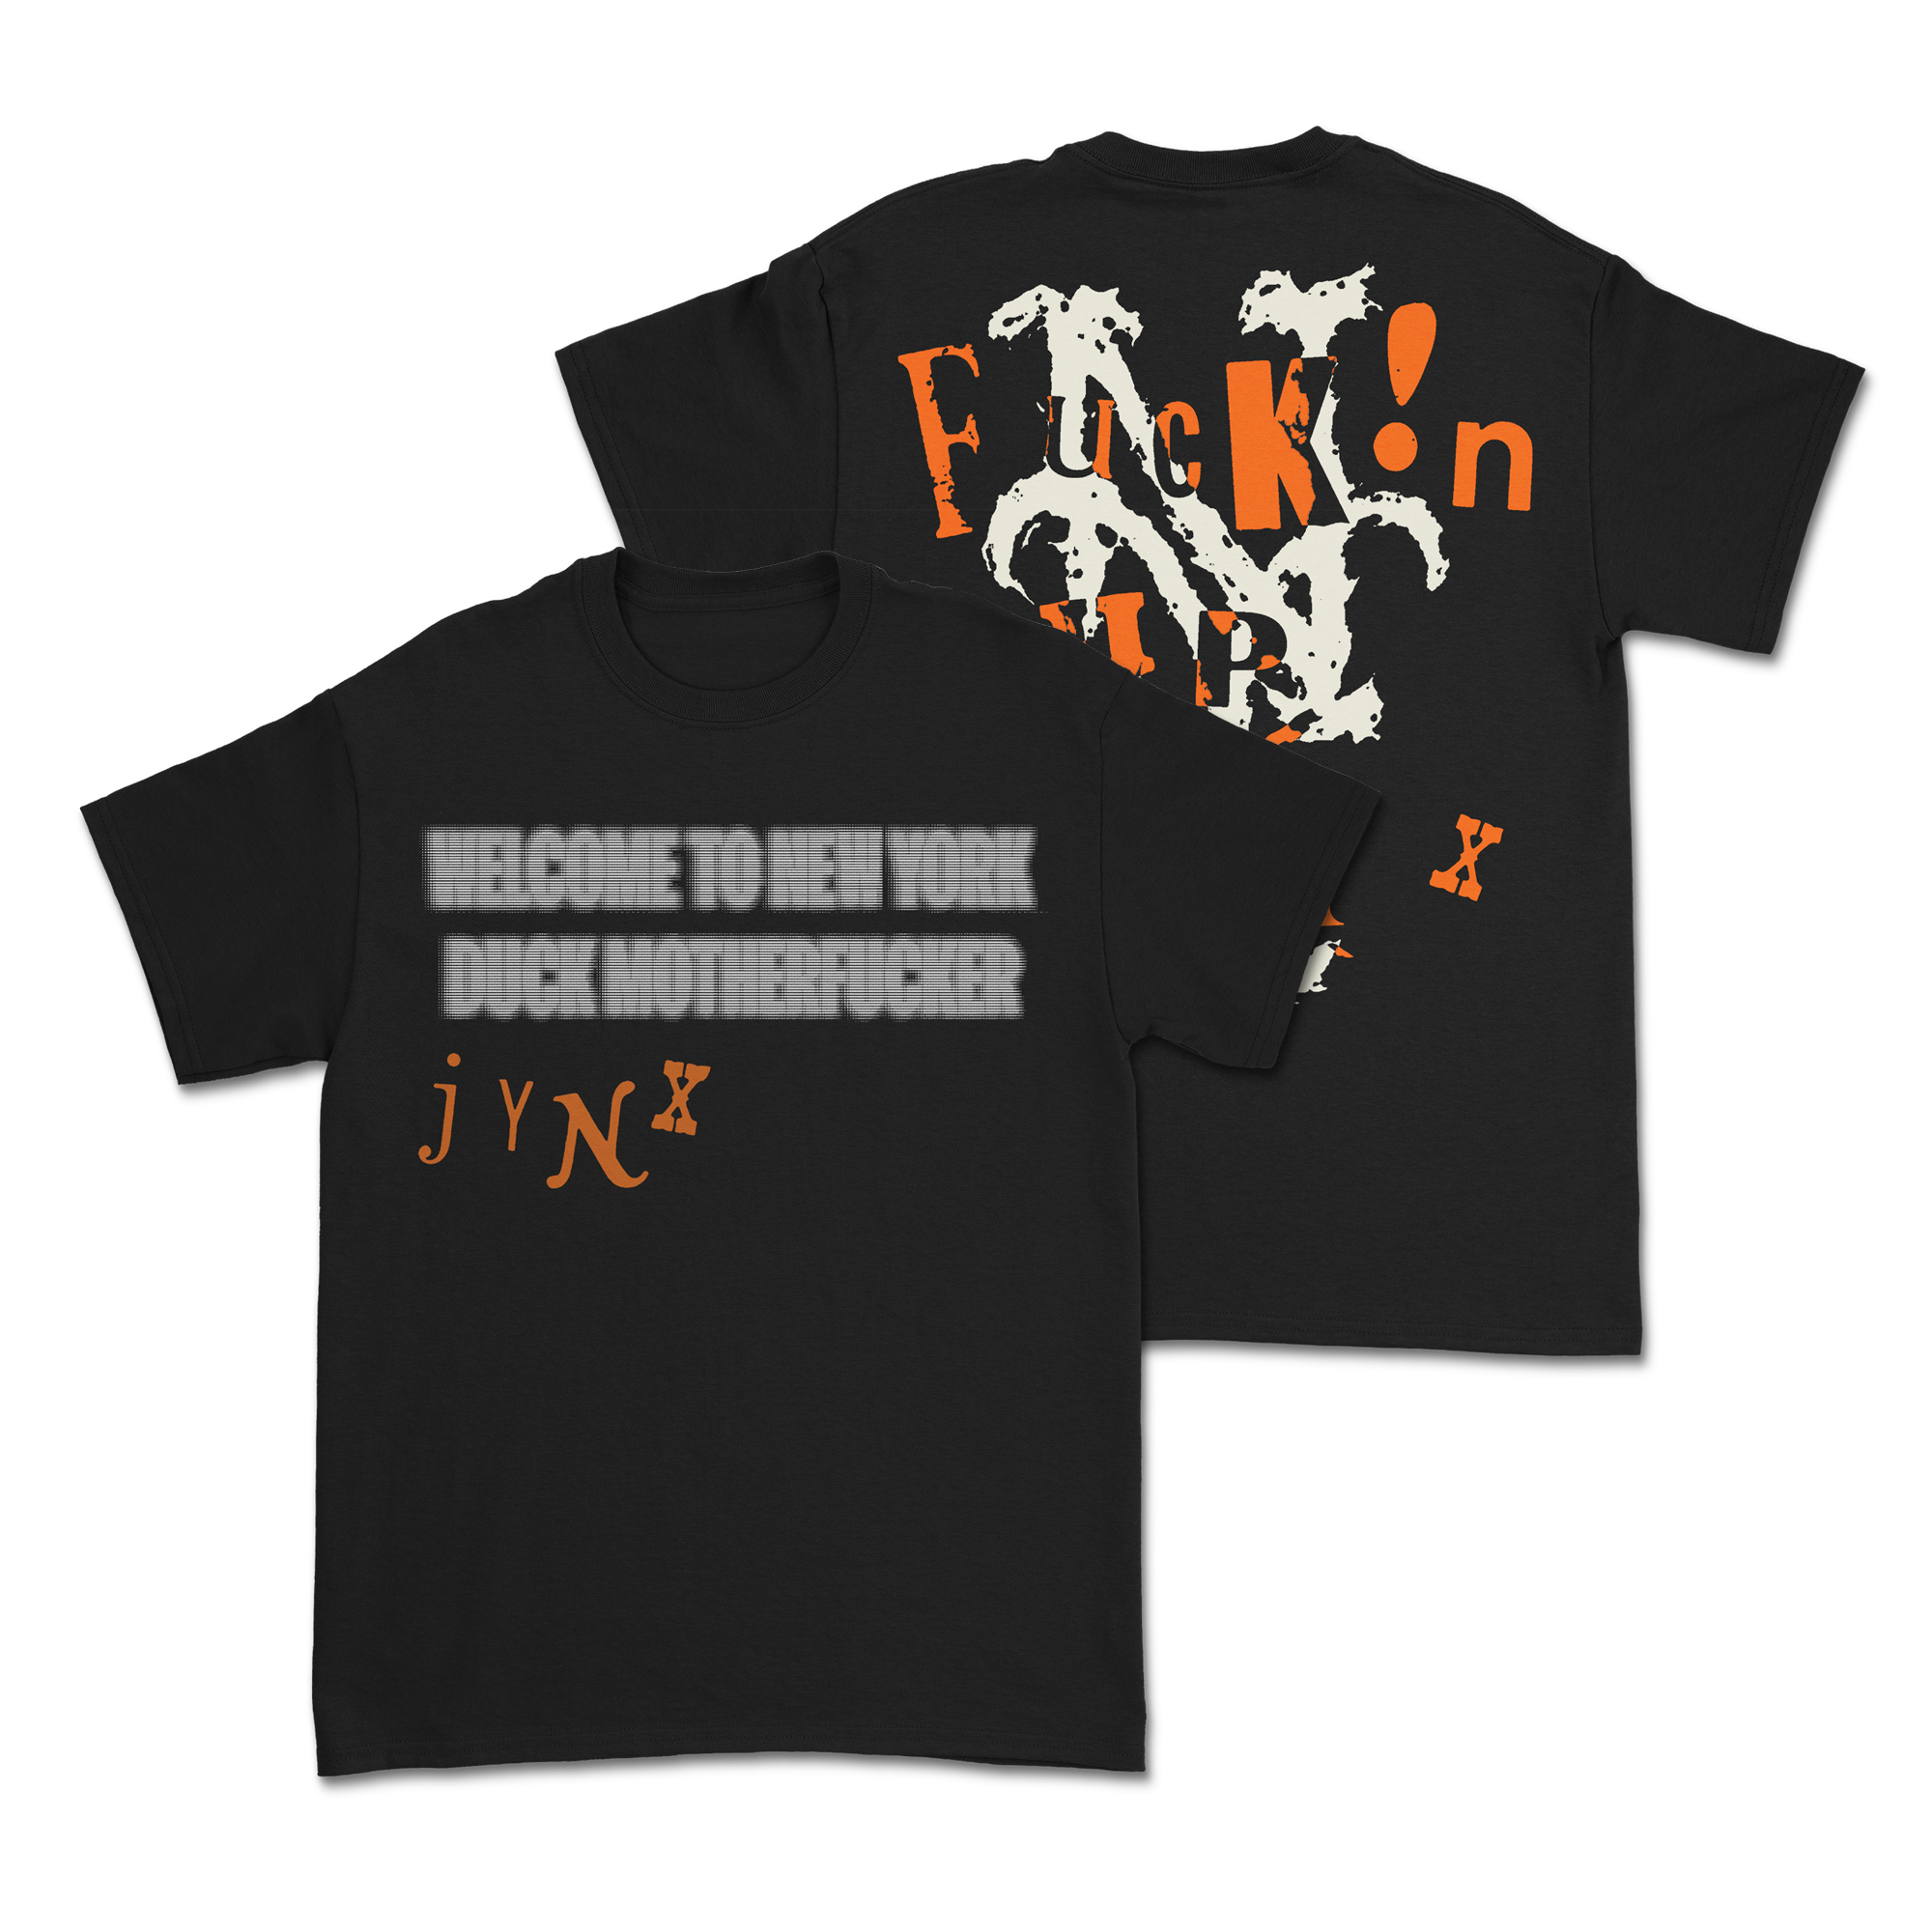 Jynx - Welcome T-Shirt